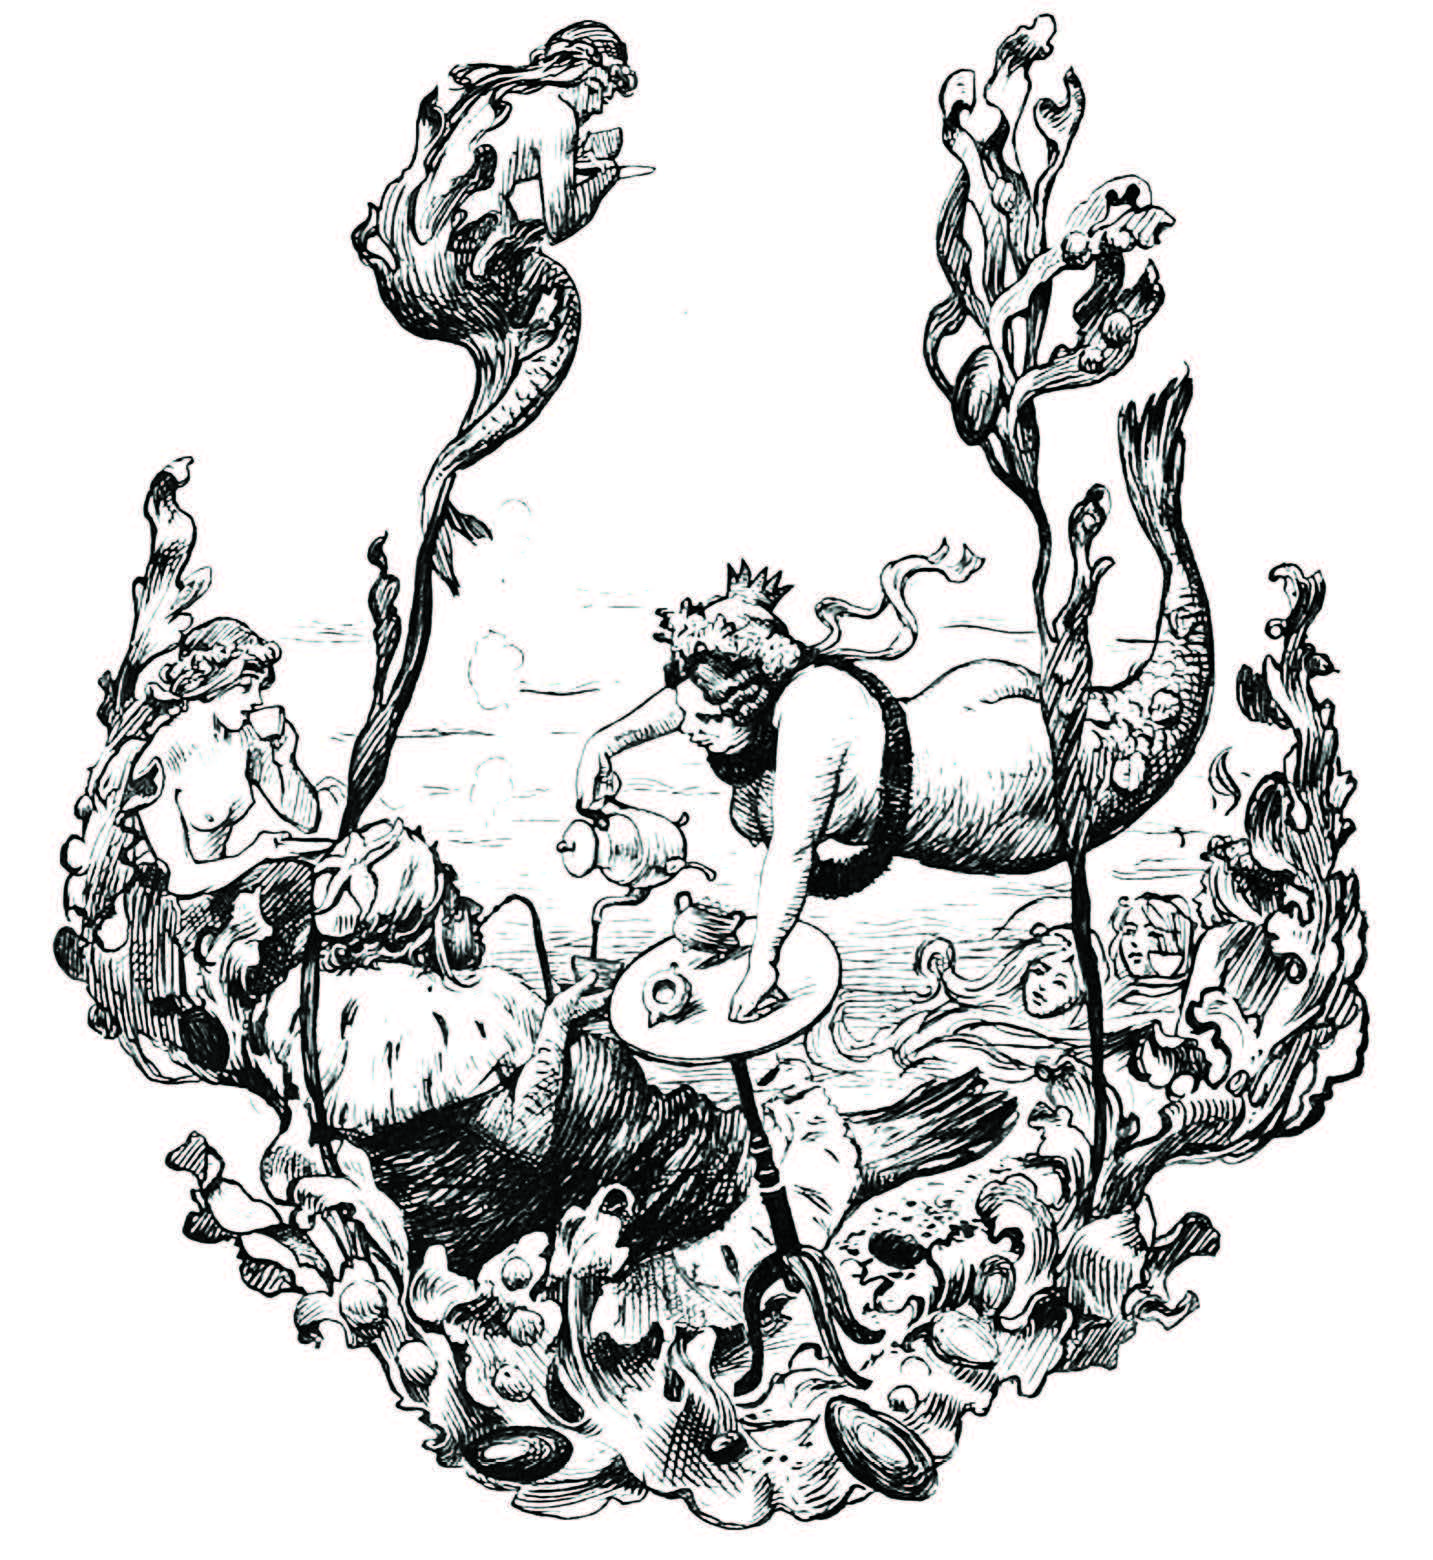 The Little Mermaid illustration by Hans Tegner